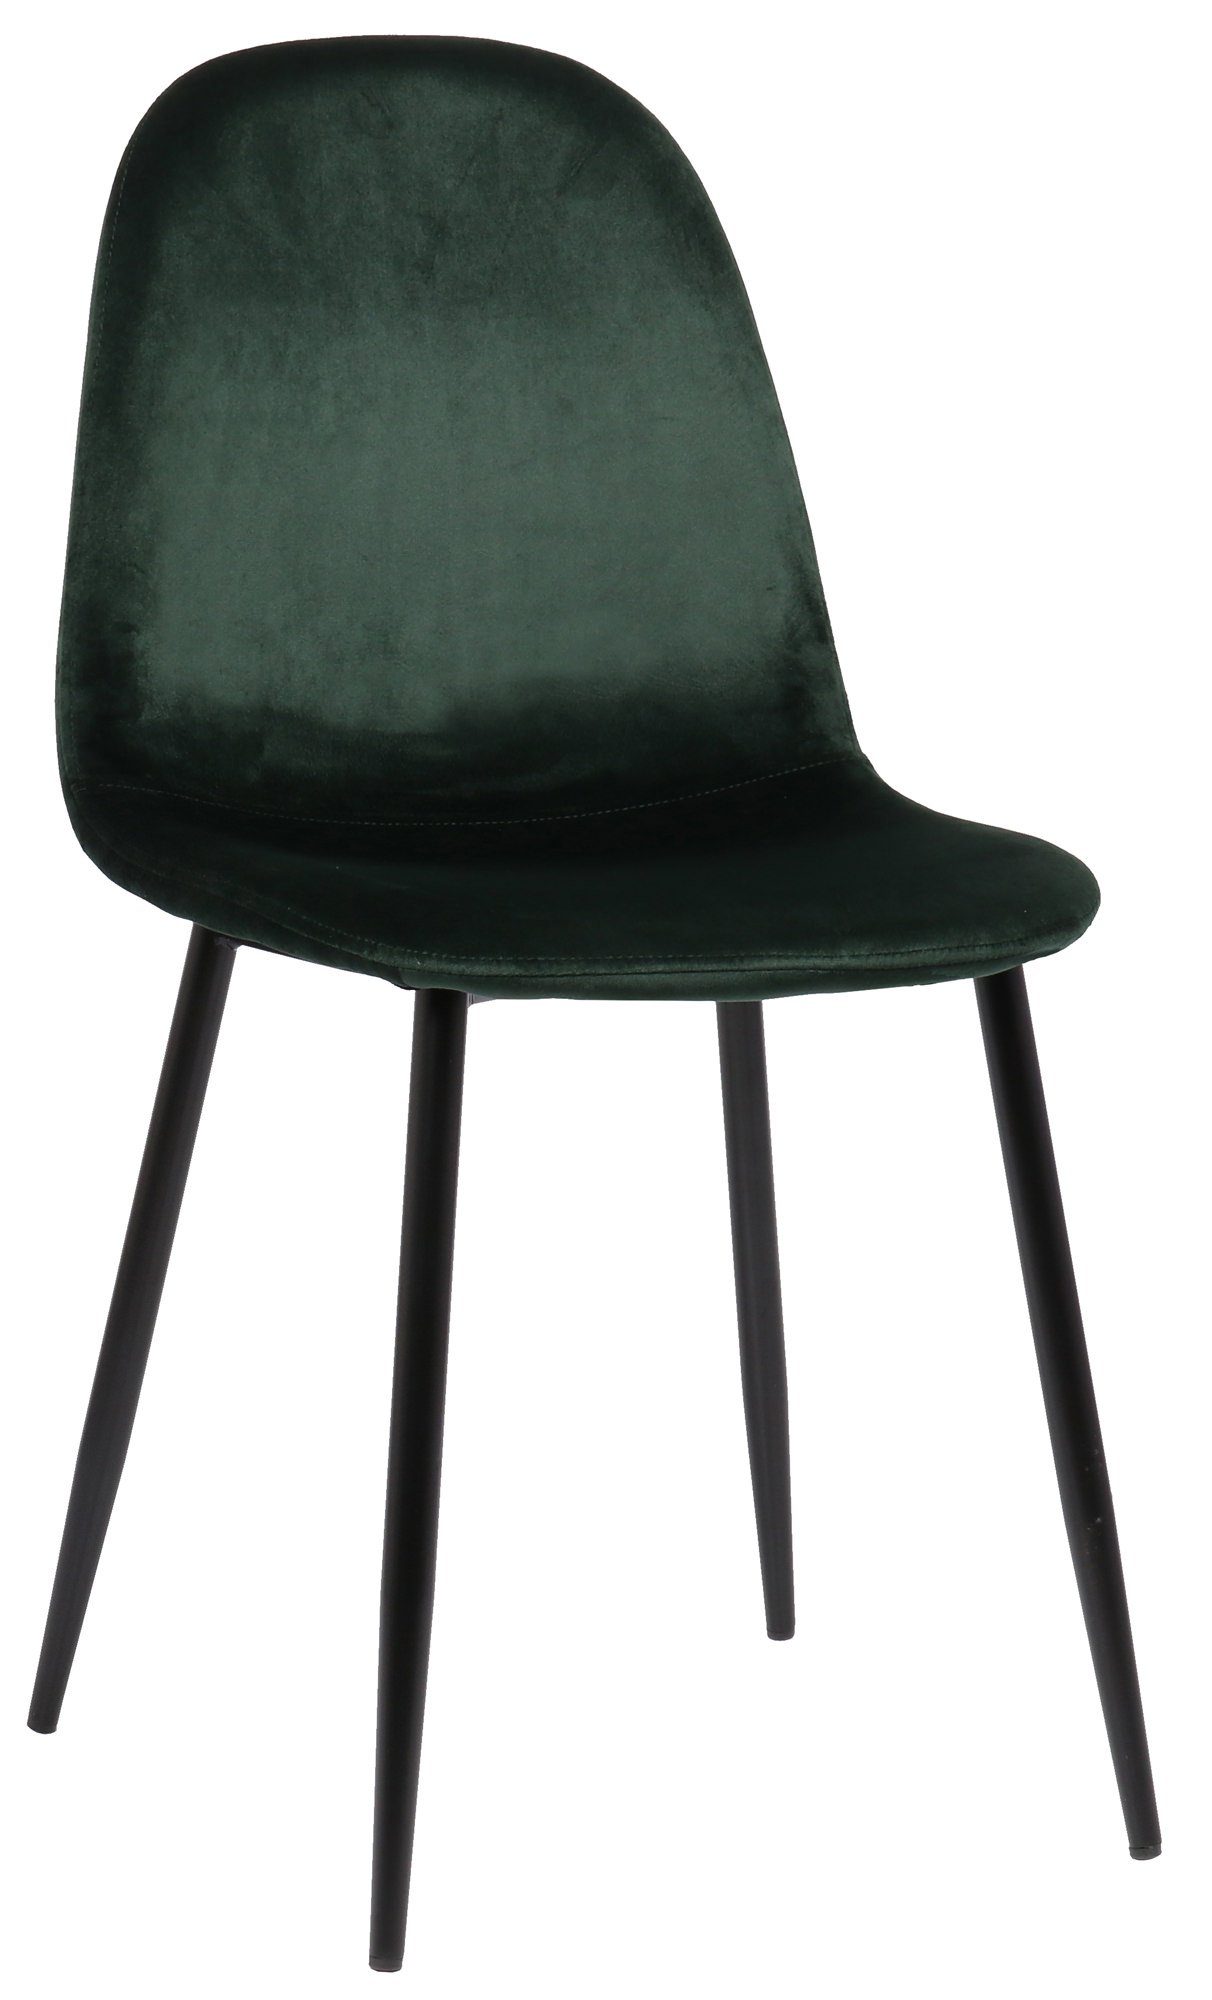 TPFLiving Esszimmerstuhl Naples mit hochwertig gepolsterter Sitzfläche - Konferenzstuhl (Küchenstuhl - Esstischstuhl - Wohnzimmerstuhl - Polsterstuhl), Gestell: Metall schwarz - Sitzfläche: Samt grün